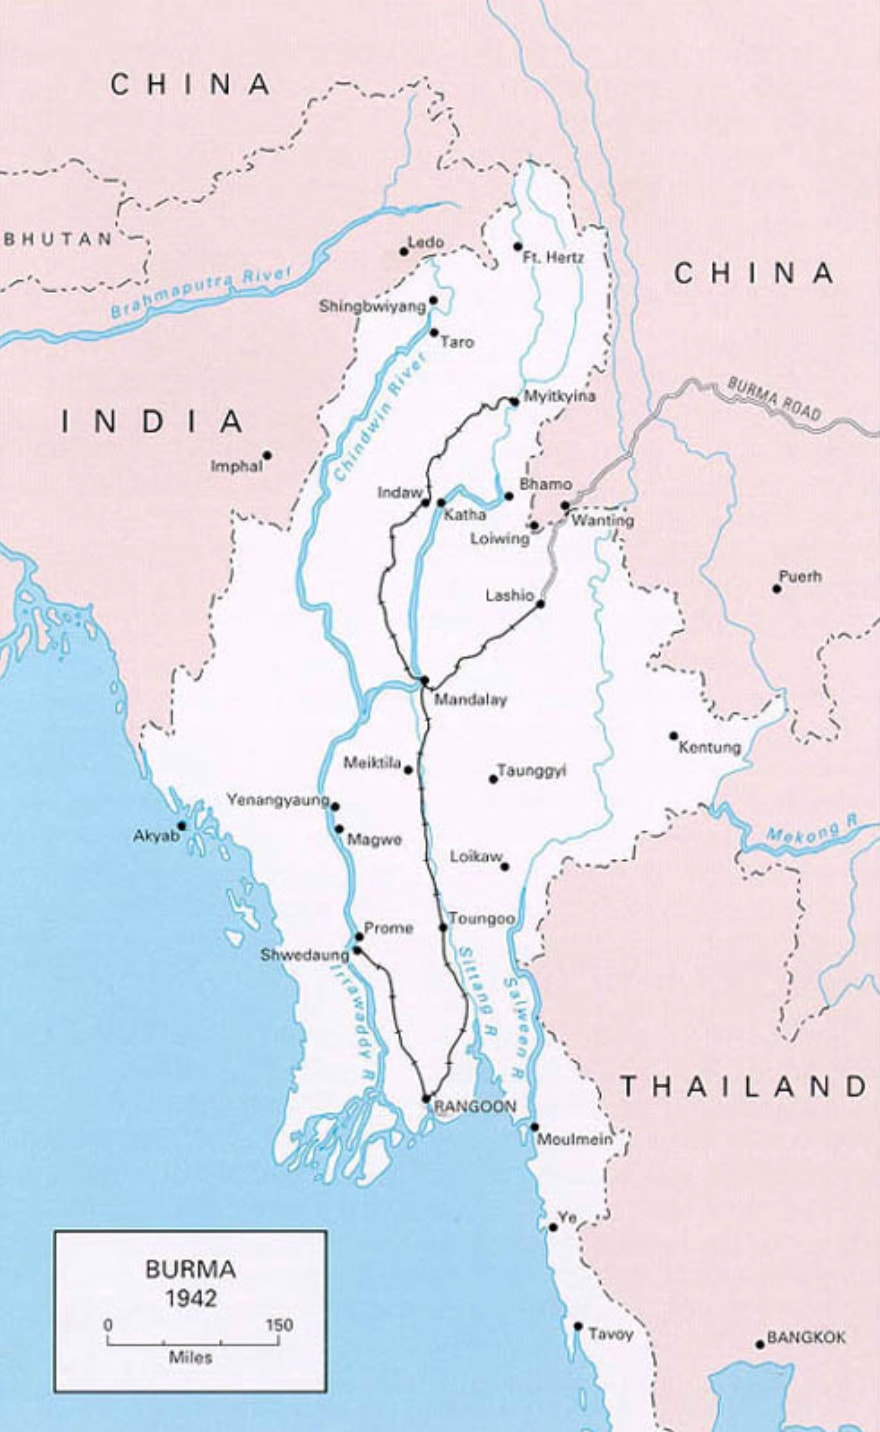 Burma in 1942